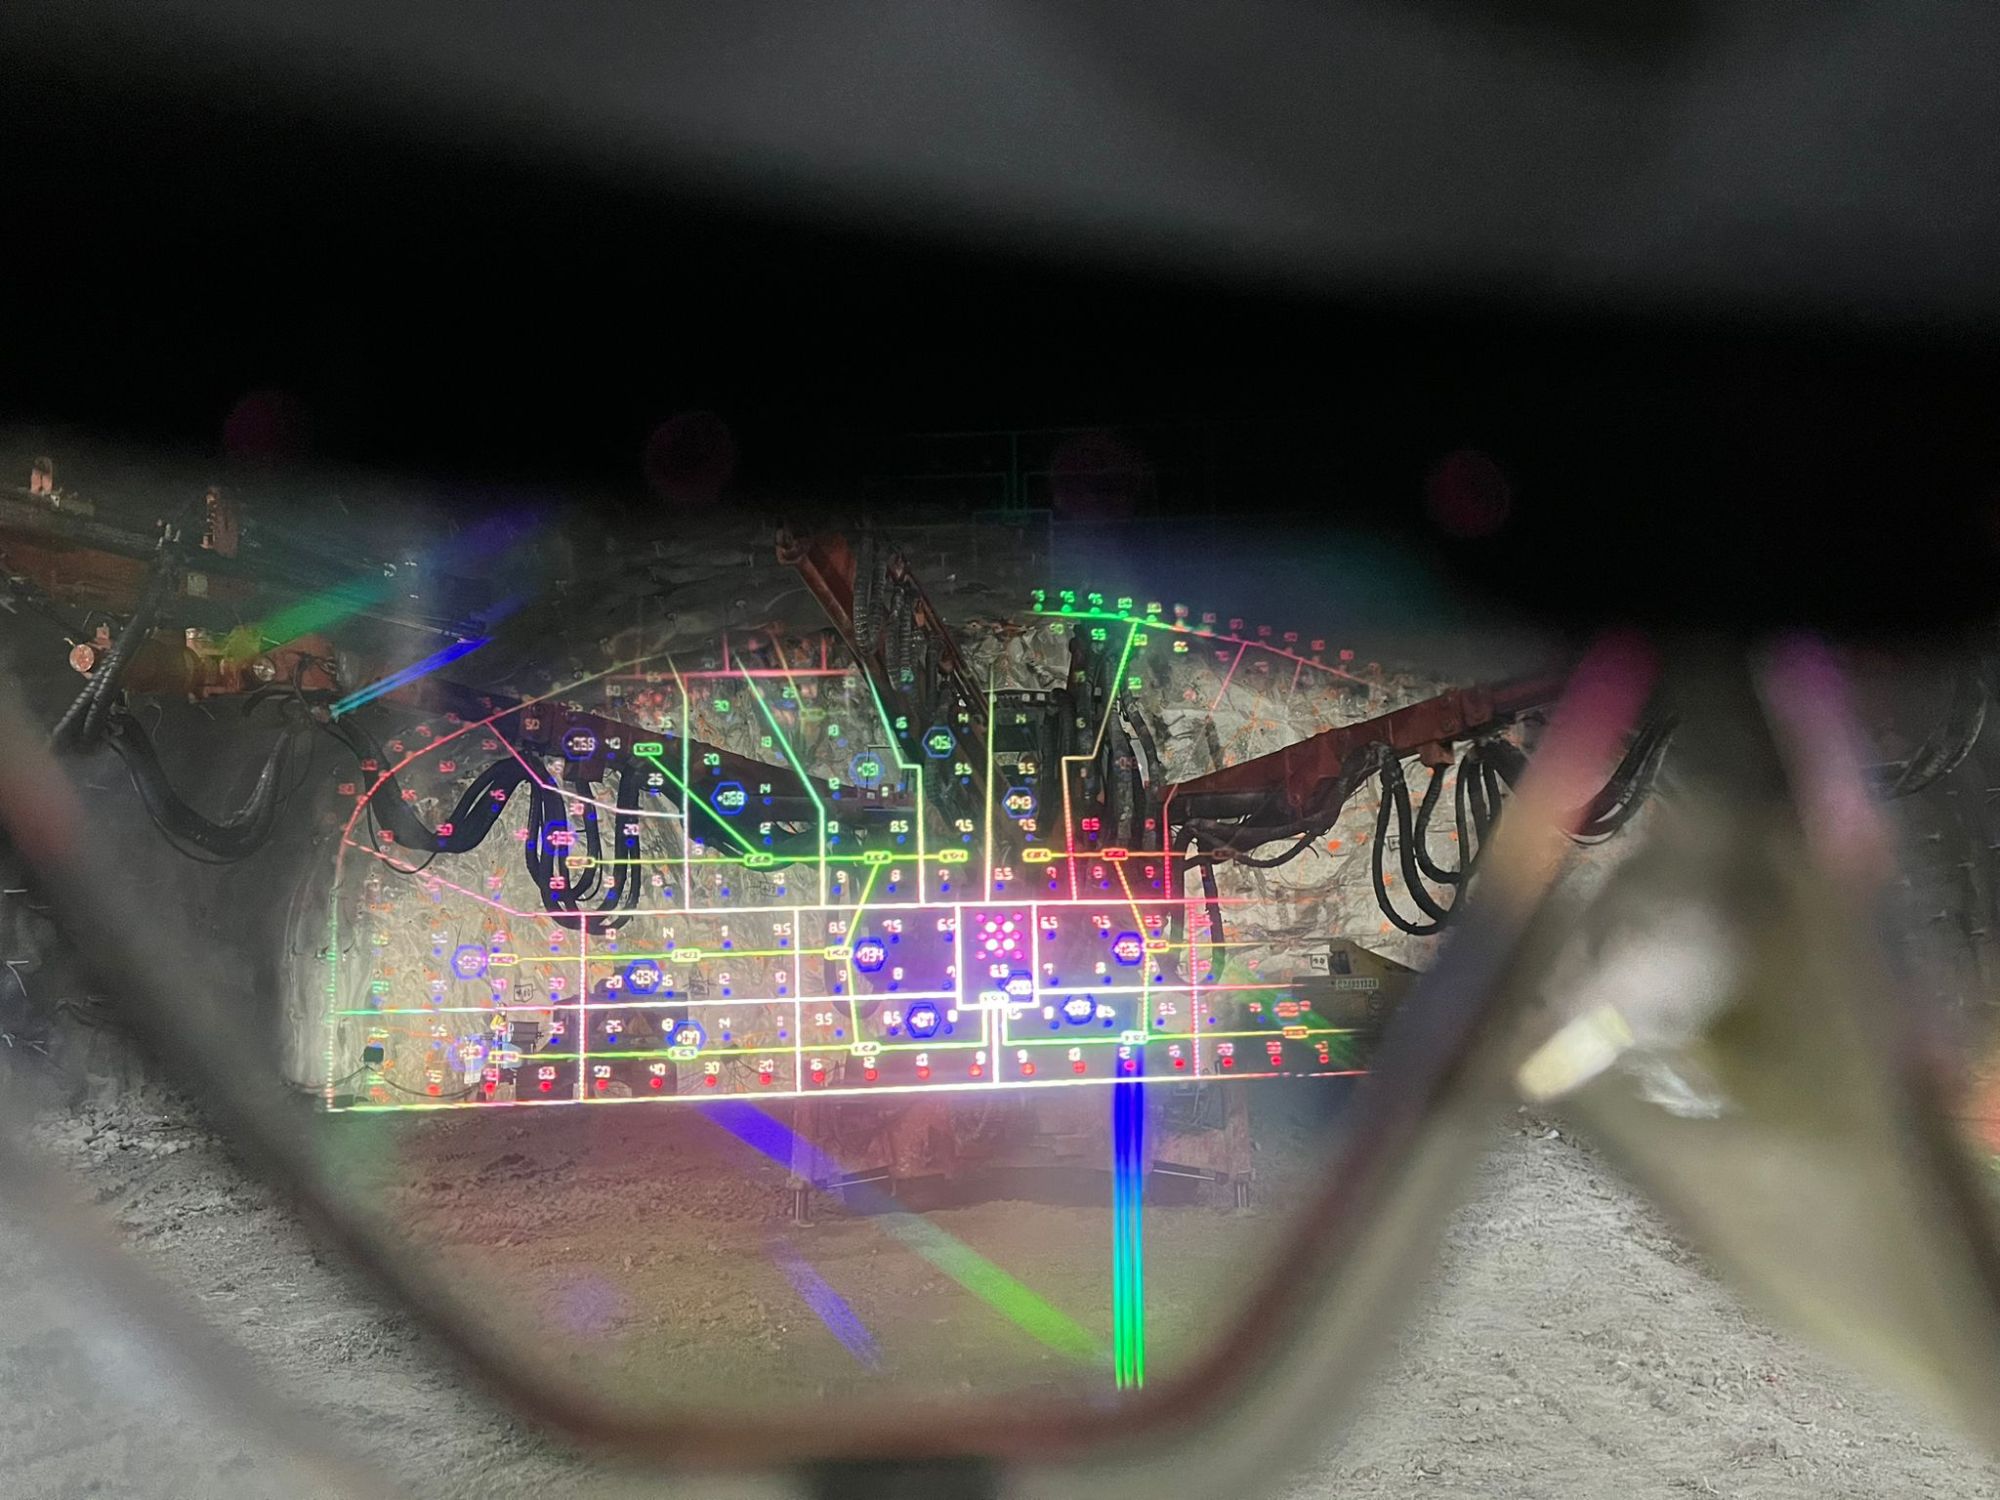 監督人員使用特製的眼鏡顯示器，在爆破面投影爆破設計圖像，有助提高驗證程序的準確性及減省工序時間。